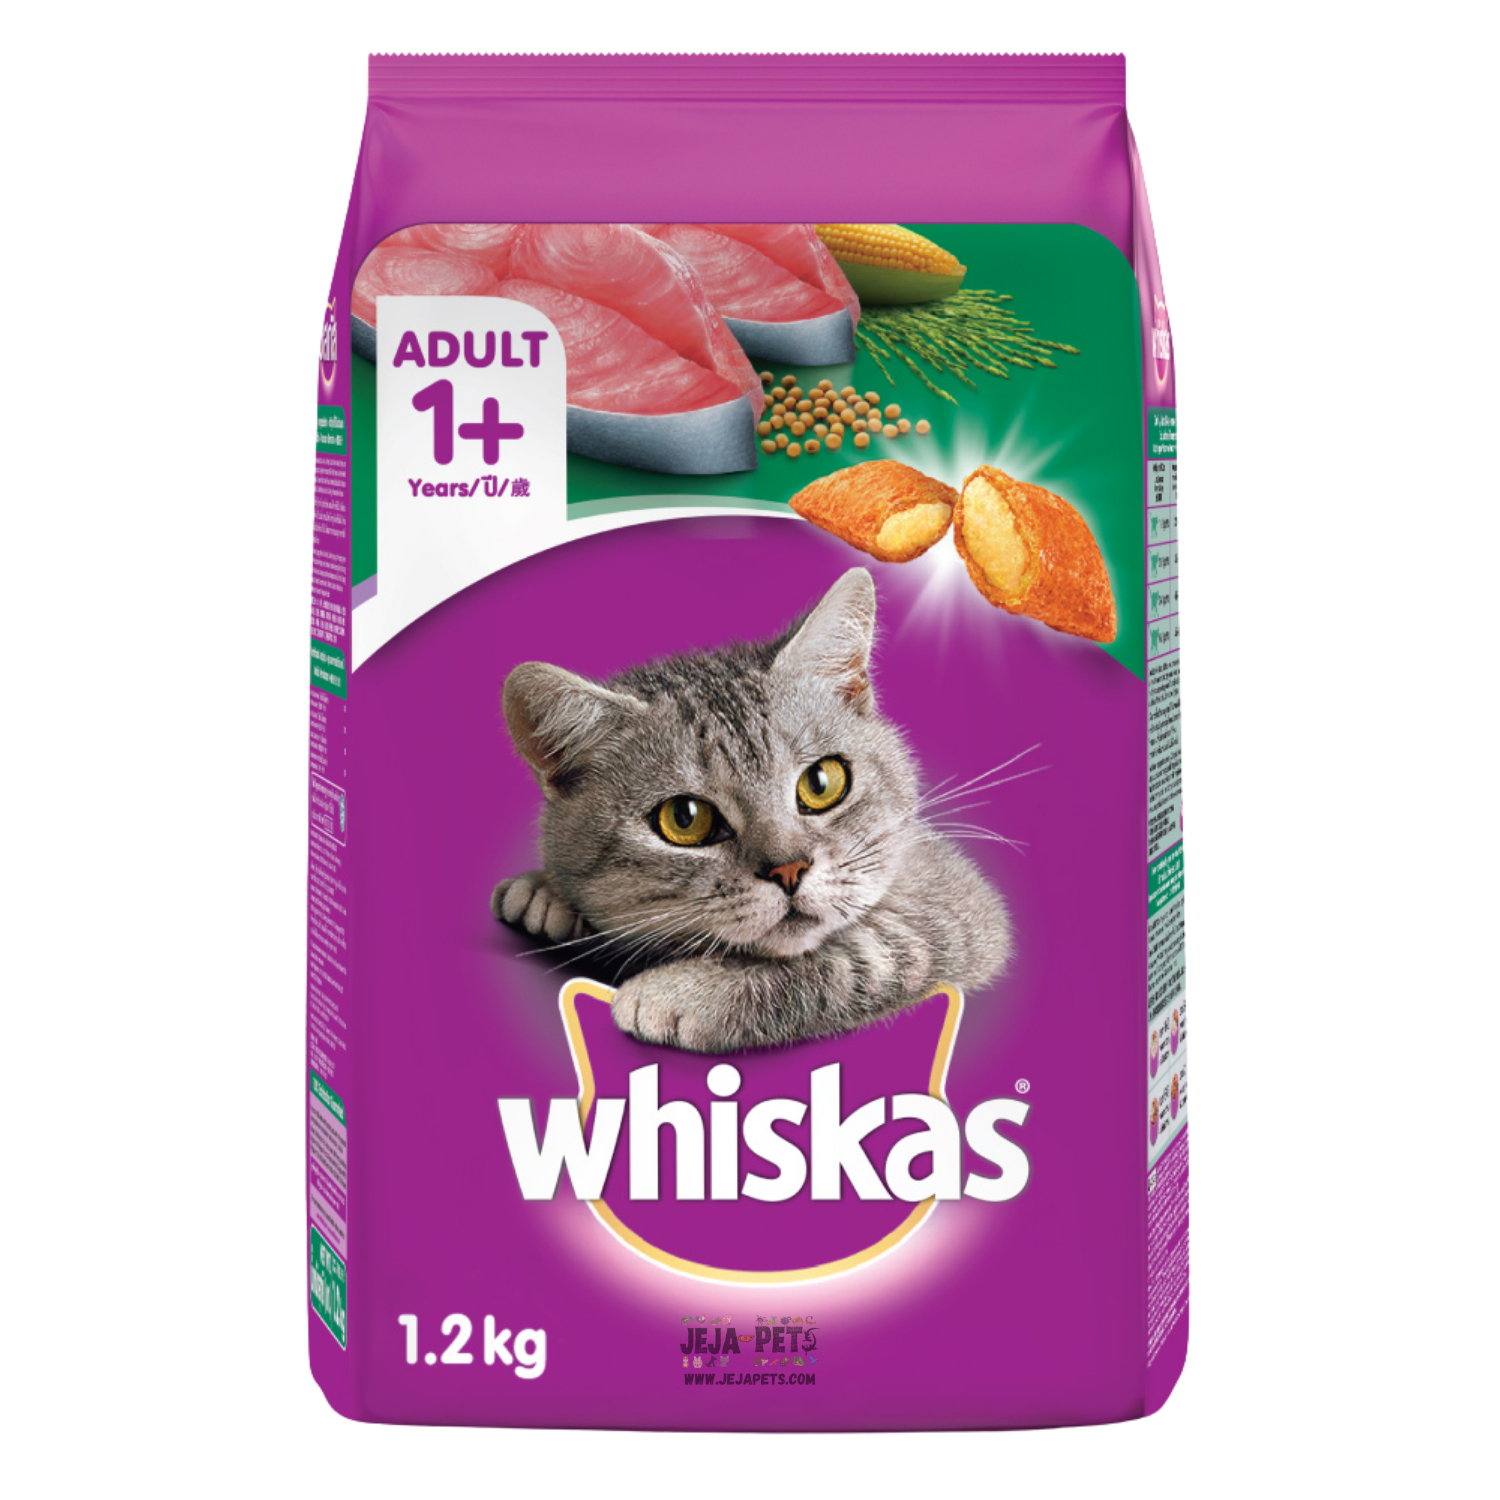 Whiskas Tuna Cat Dry Food - 480g / 1.2kg